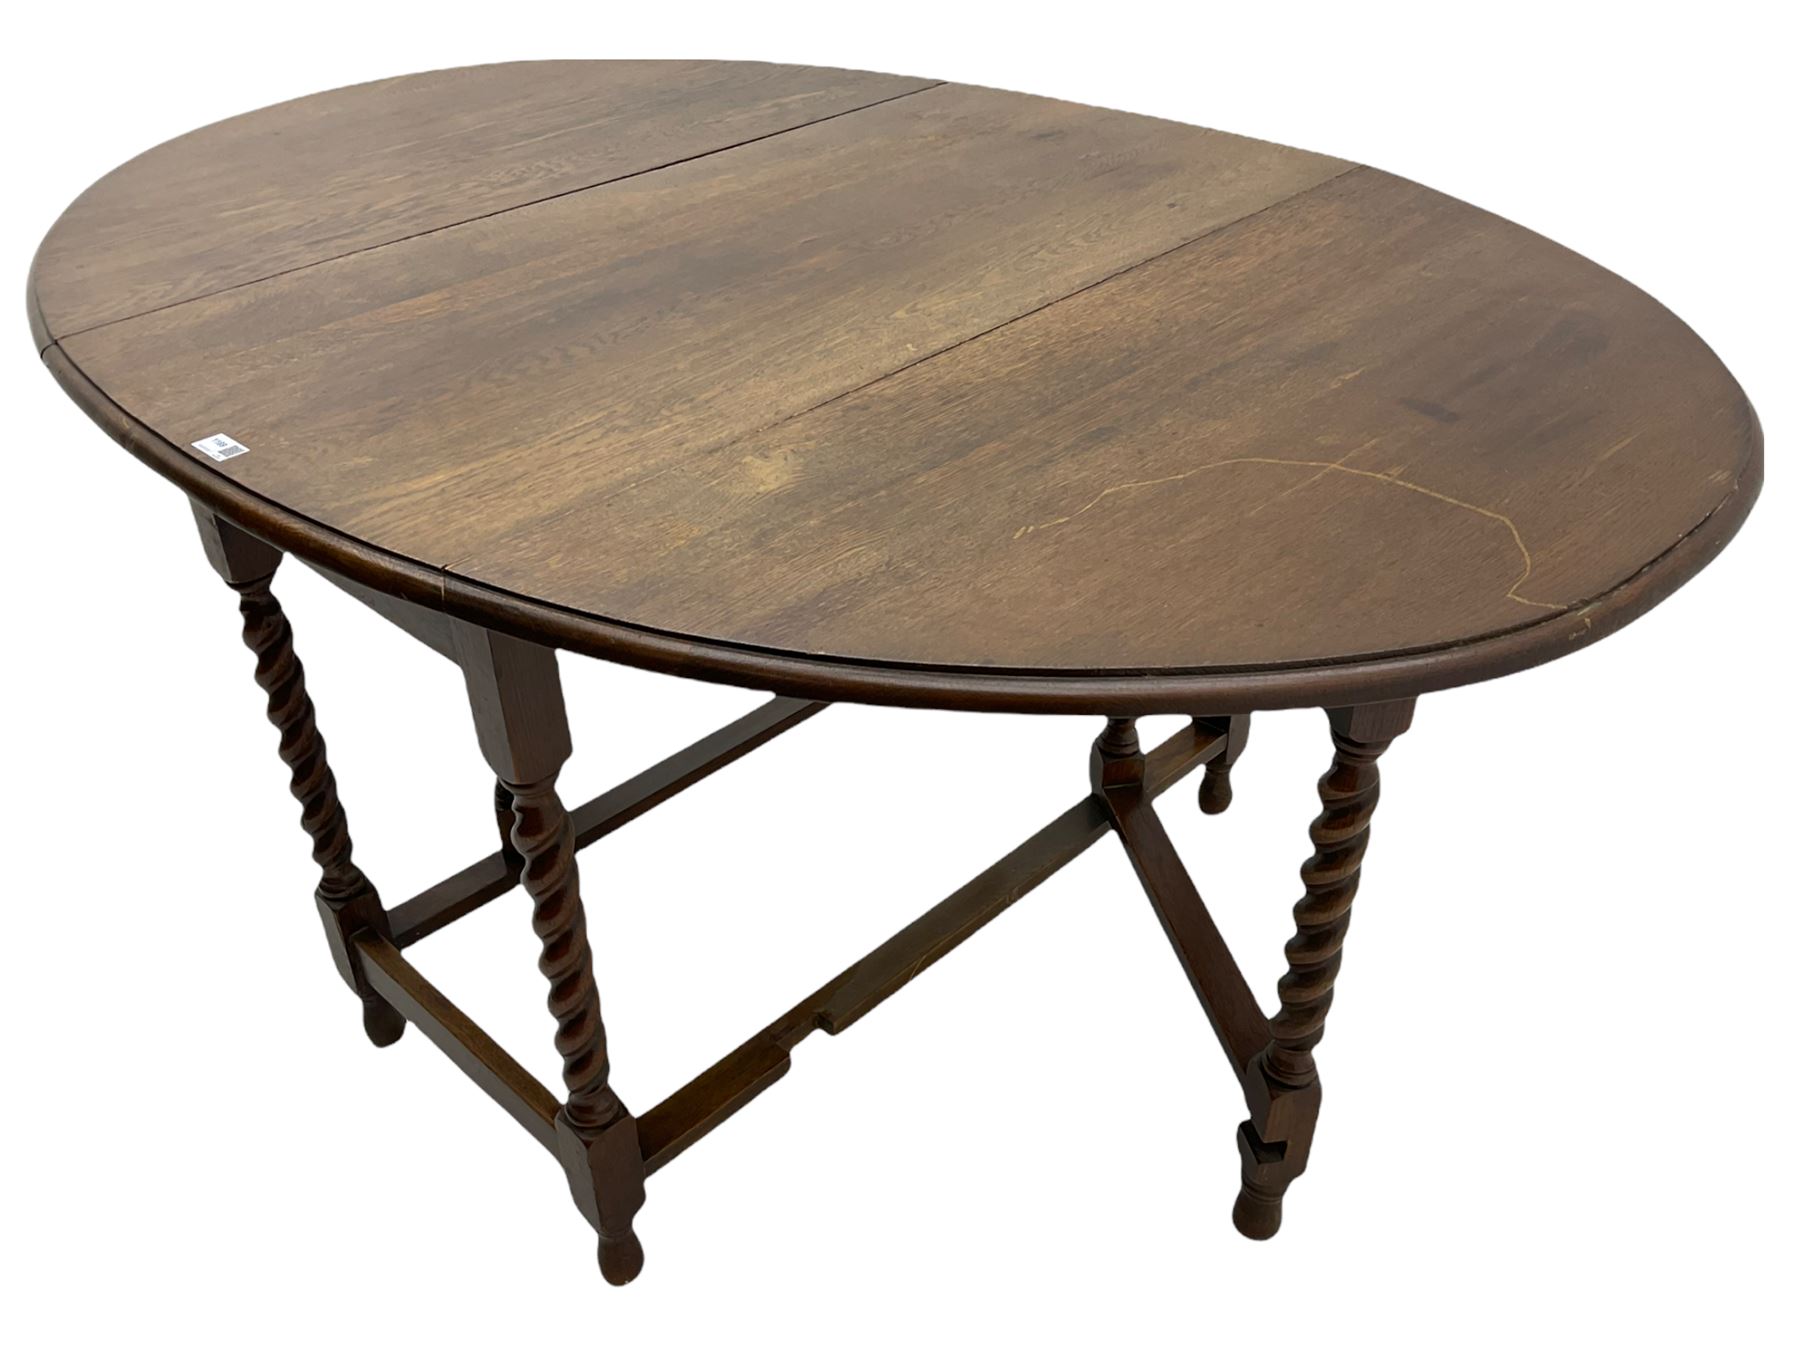 Early 20th century oak barley twist drop leaf dining table (105cm x 154cm - Image 10 of 24